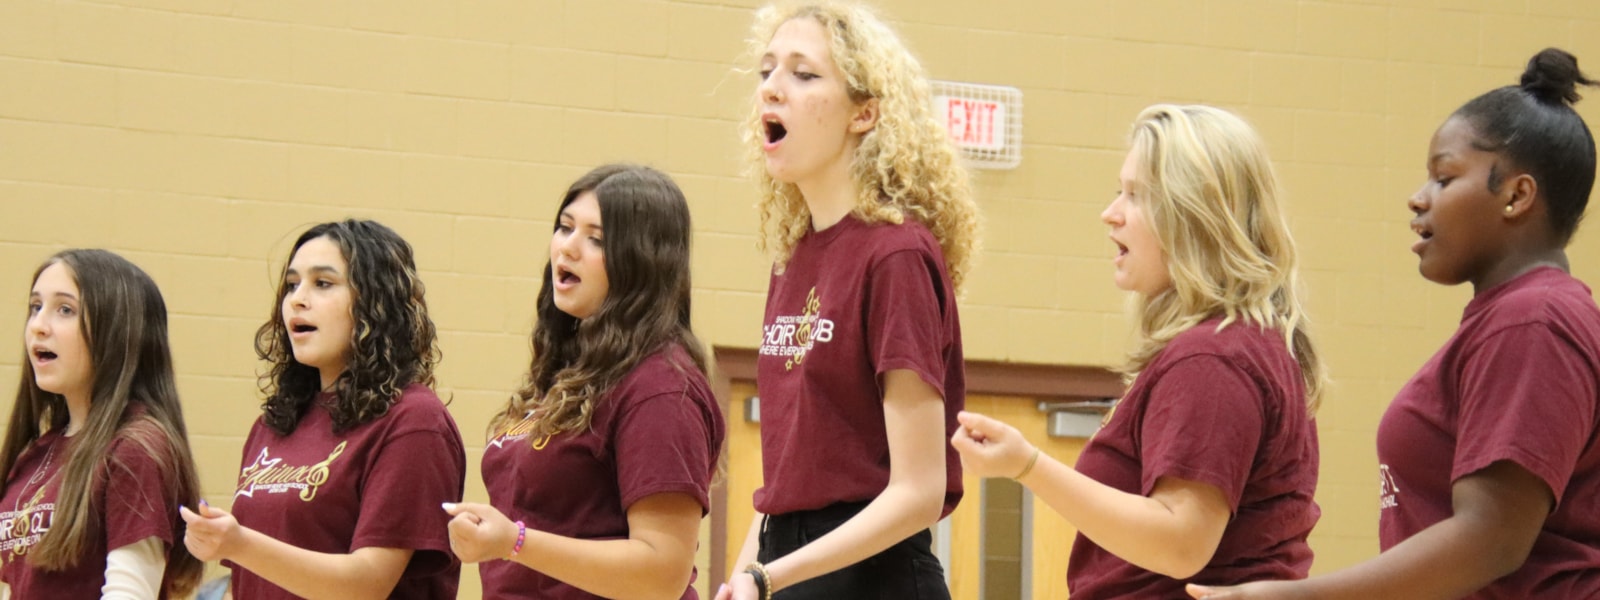 Female students singing